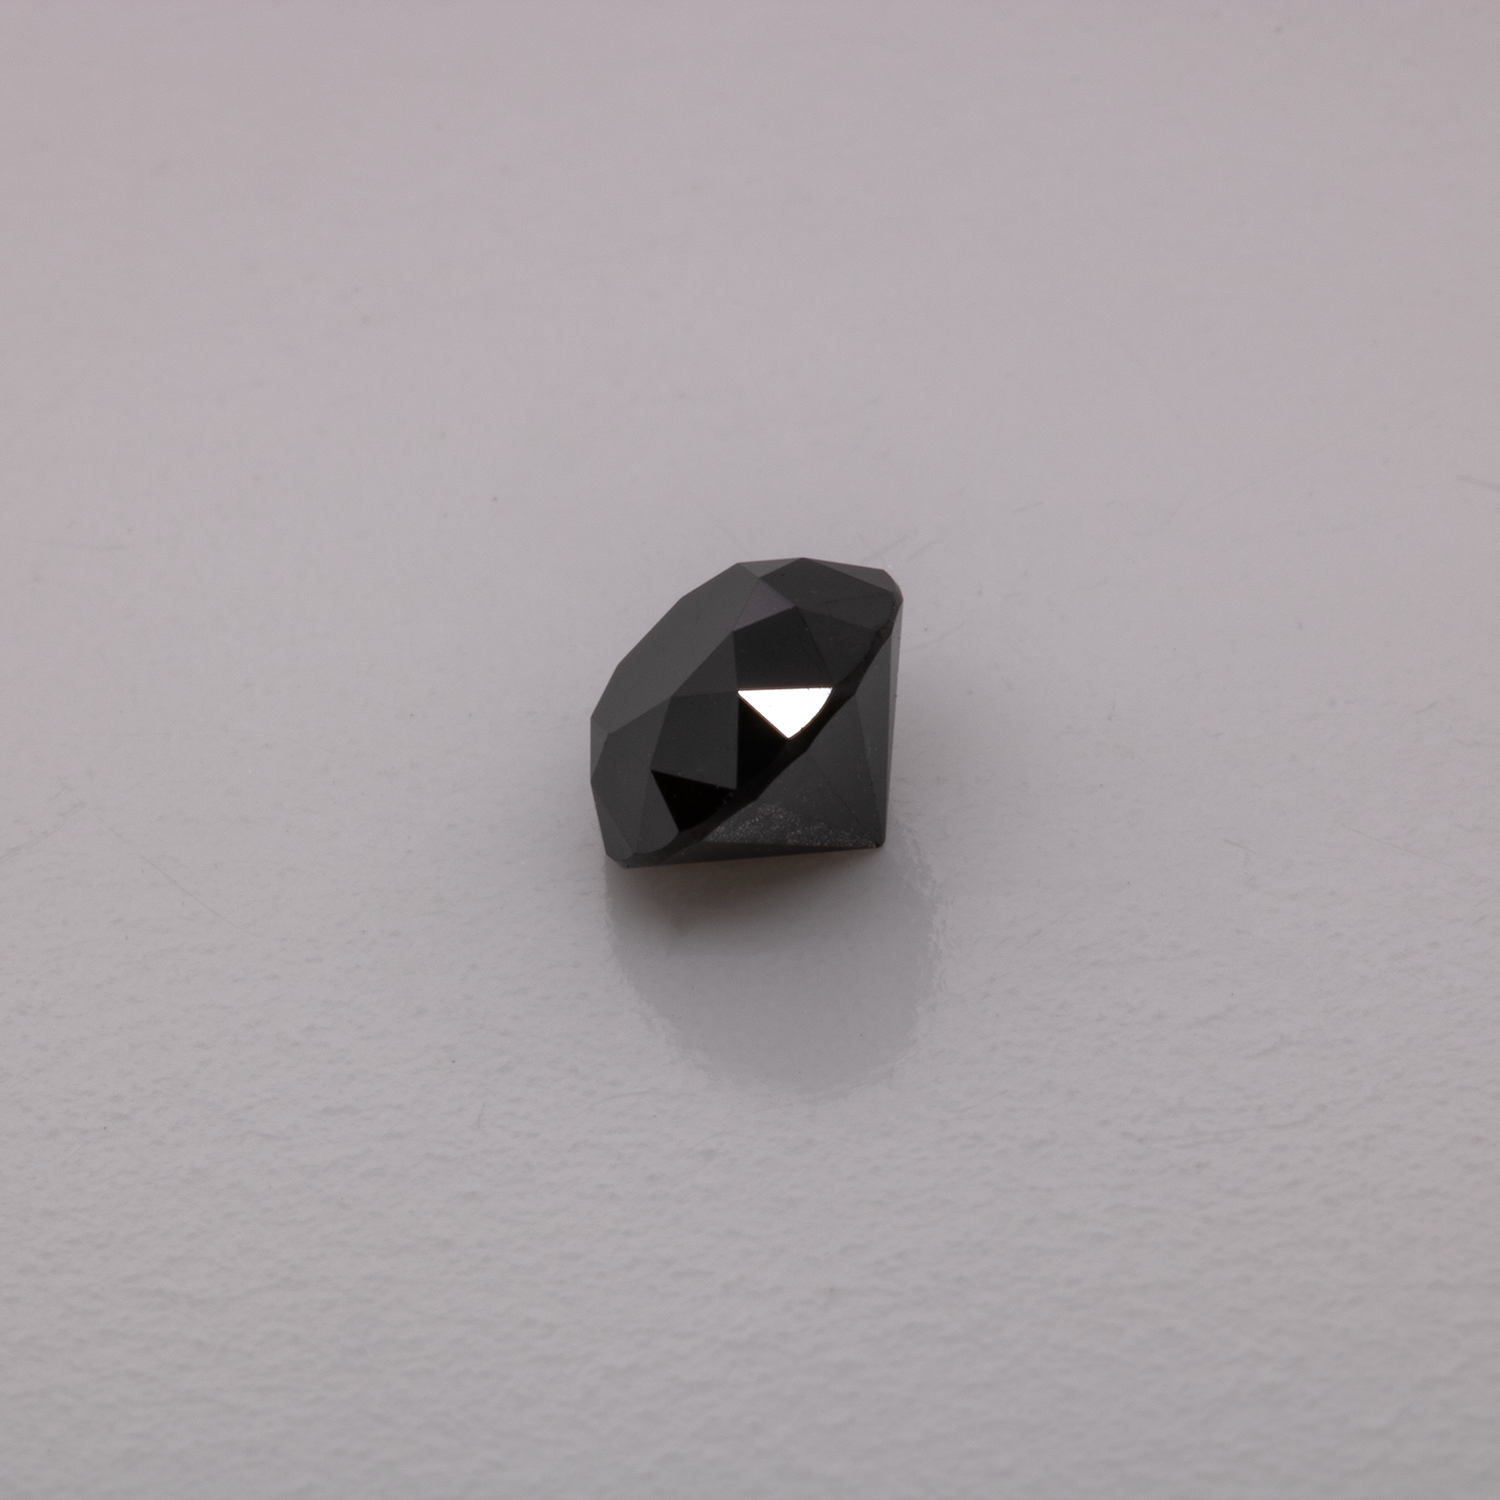 Diamant - schwarz, nicht transparent, rund, 4,3mm, ca. 0,4 -0,5 cts, Nr. D11062